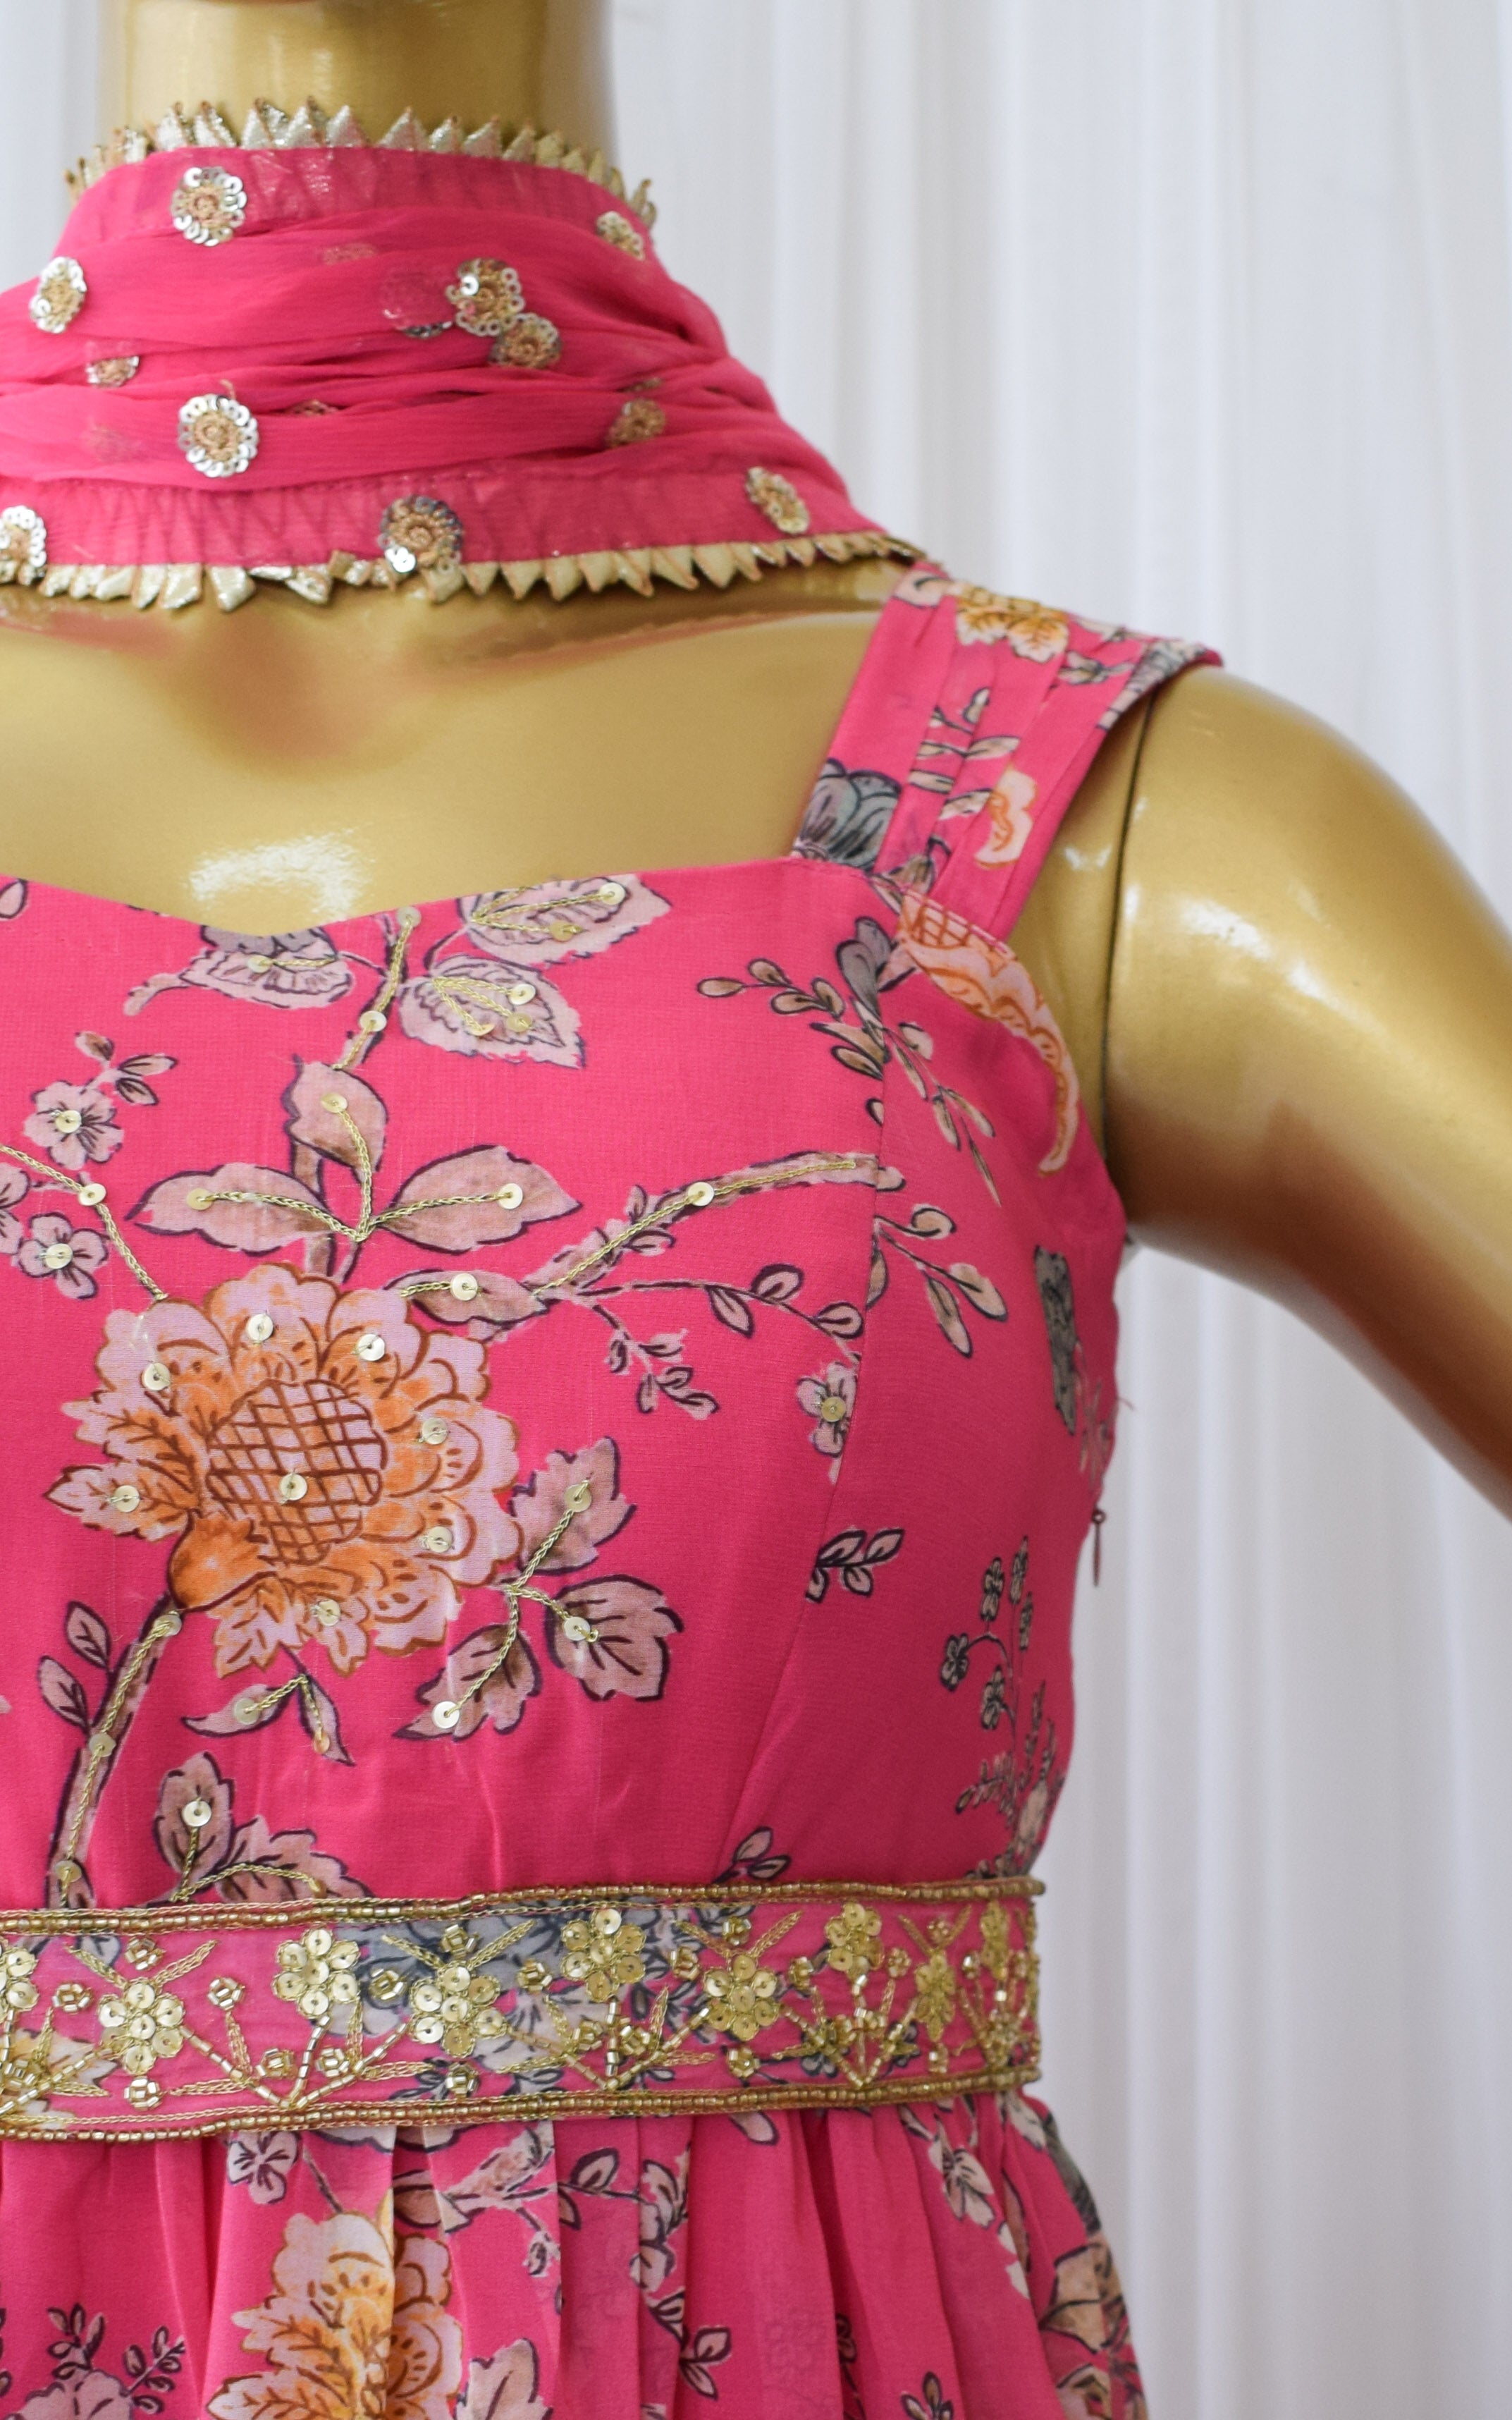 Asees Kaur Pink Floral Printed Georgette Handwork Anarkali with Embellished Belt